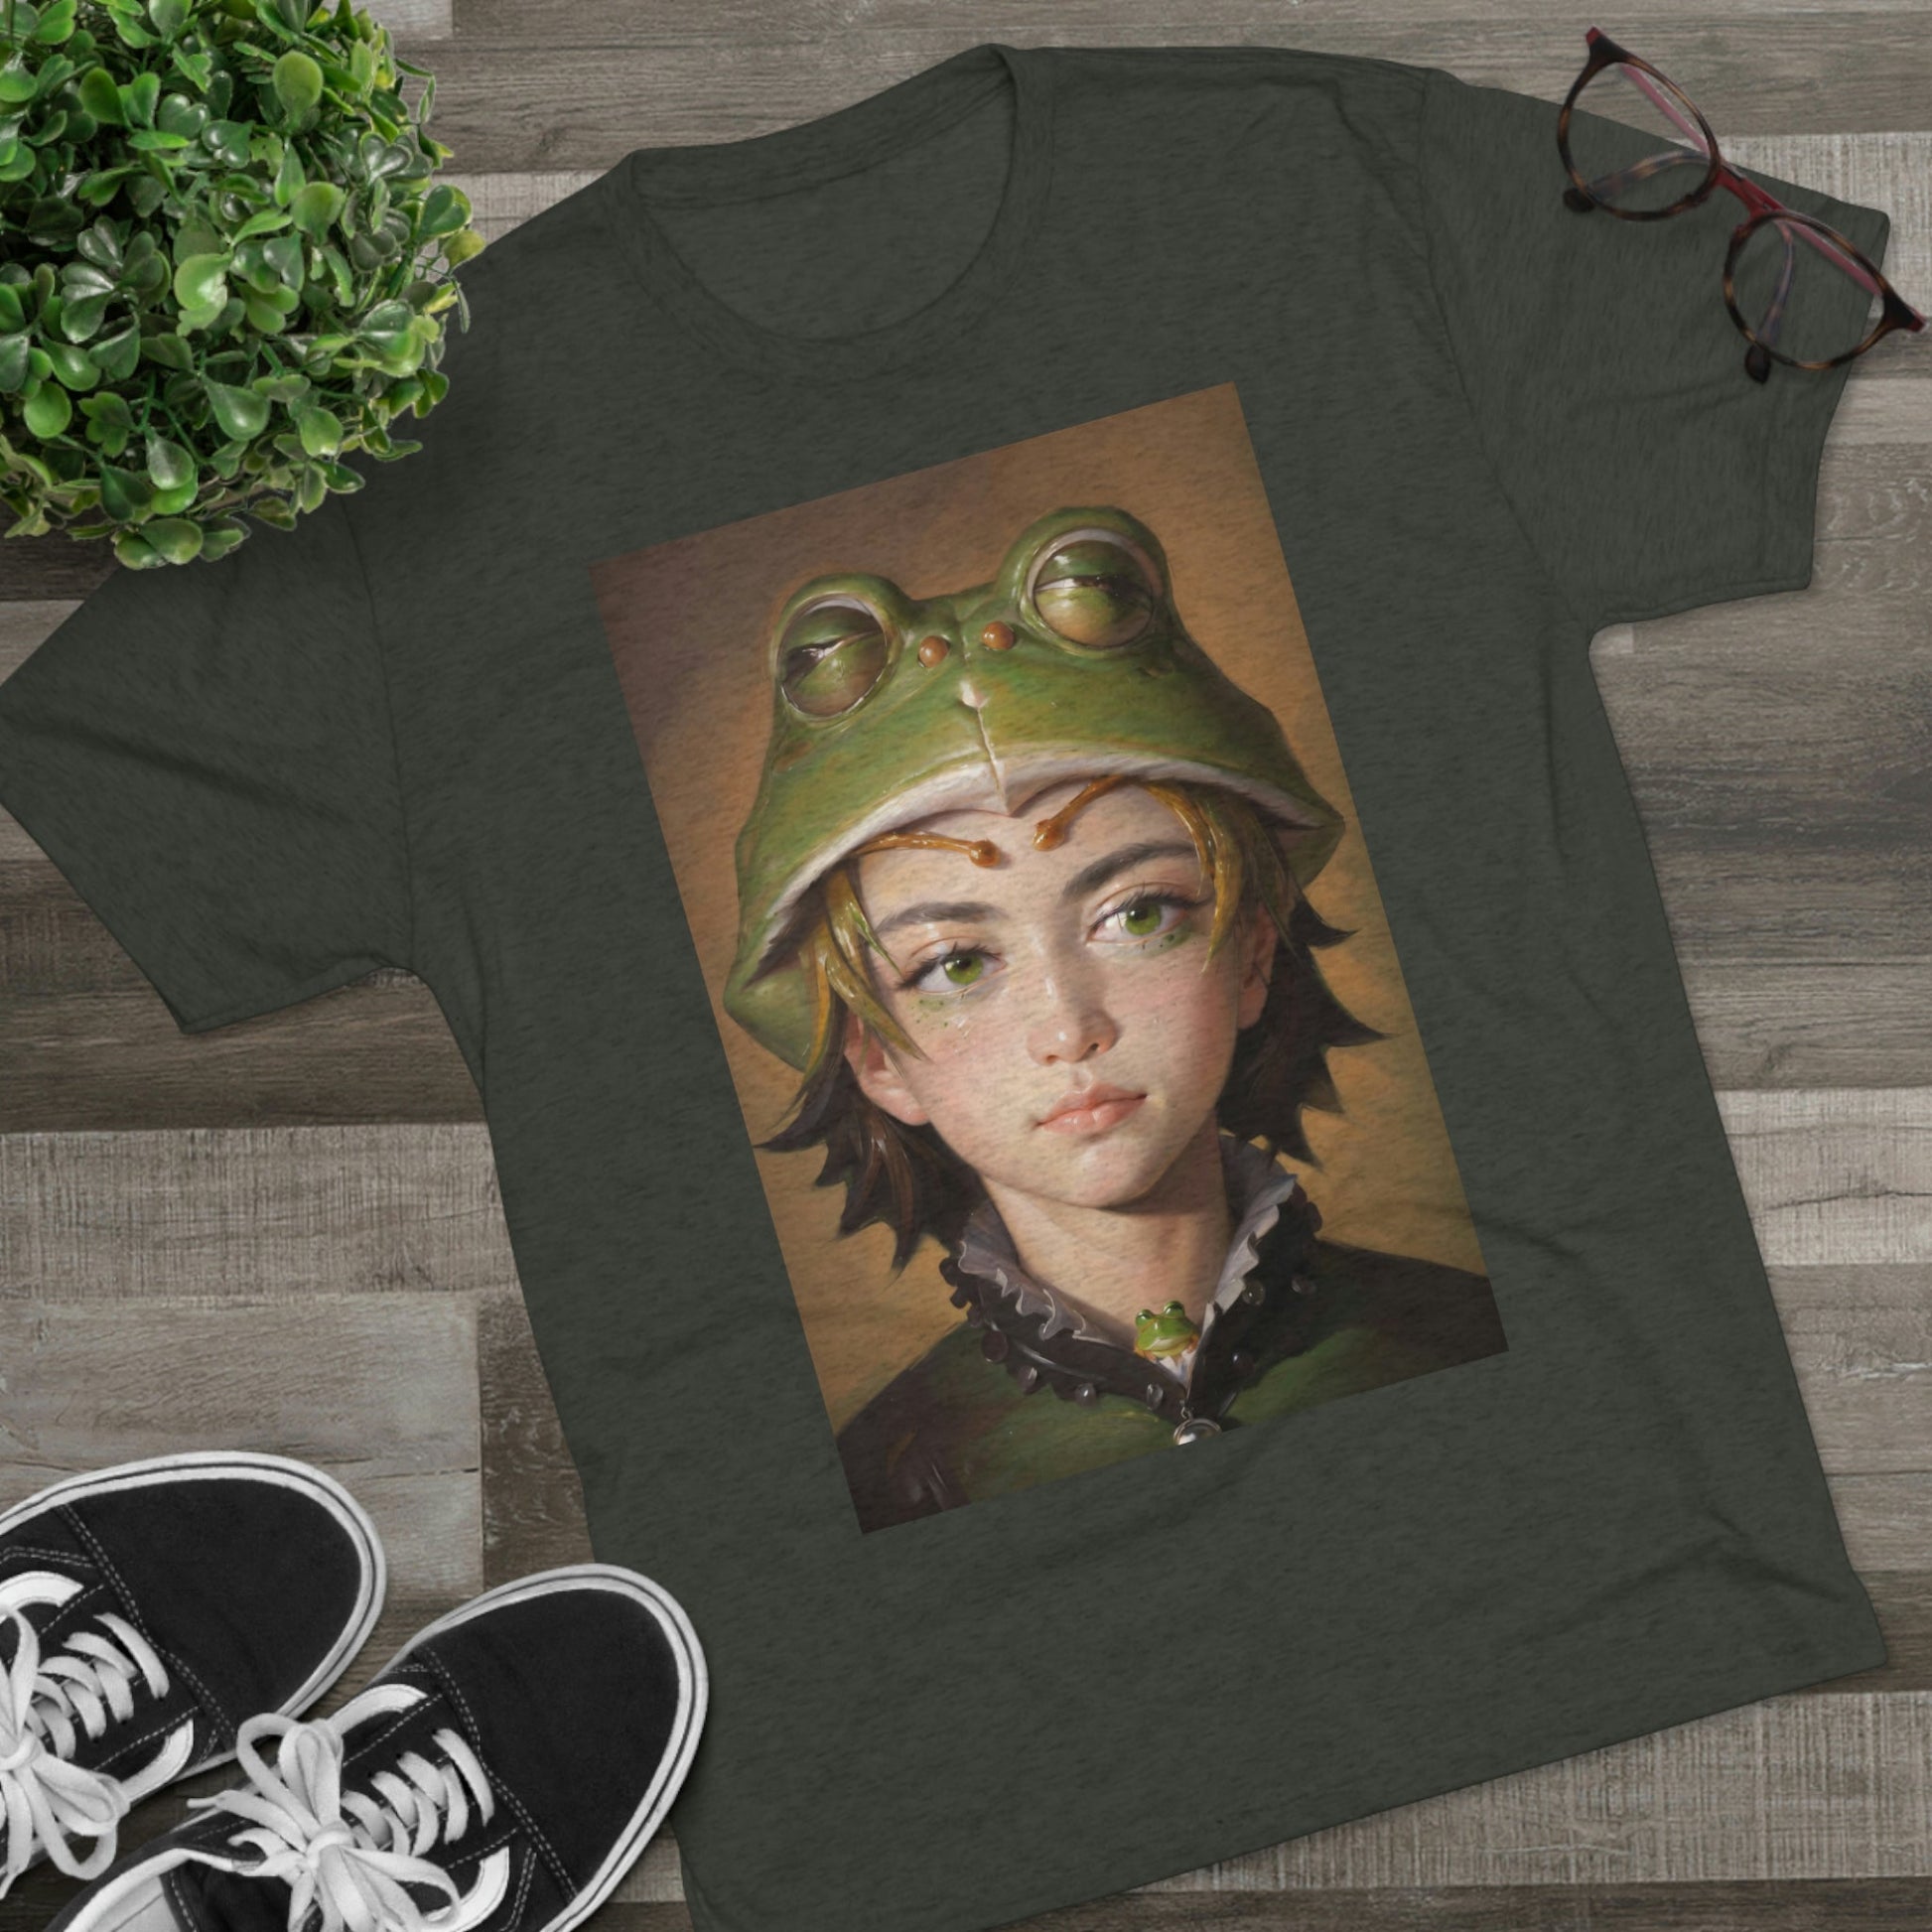 T-Shirt | Frog Boy Shirt - Moikas